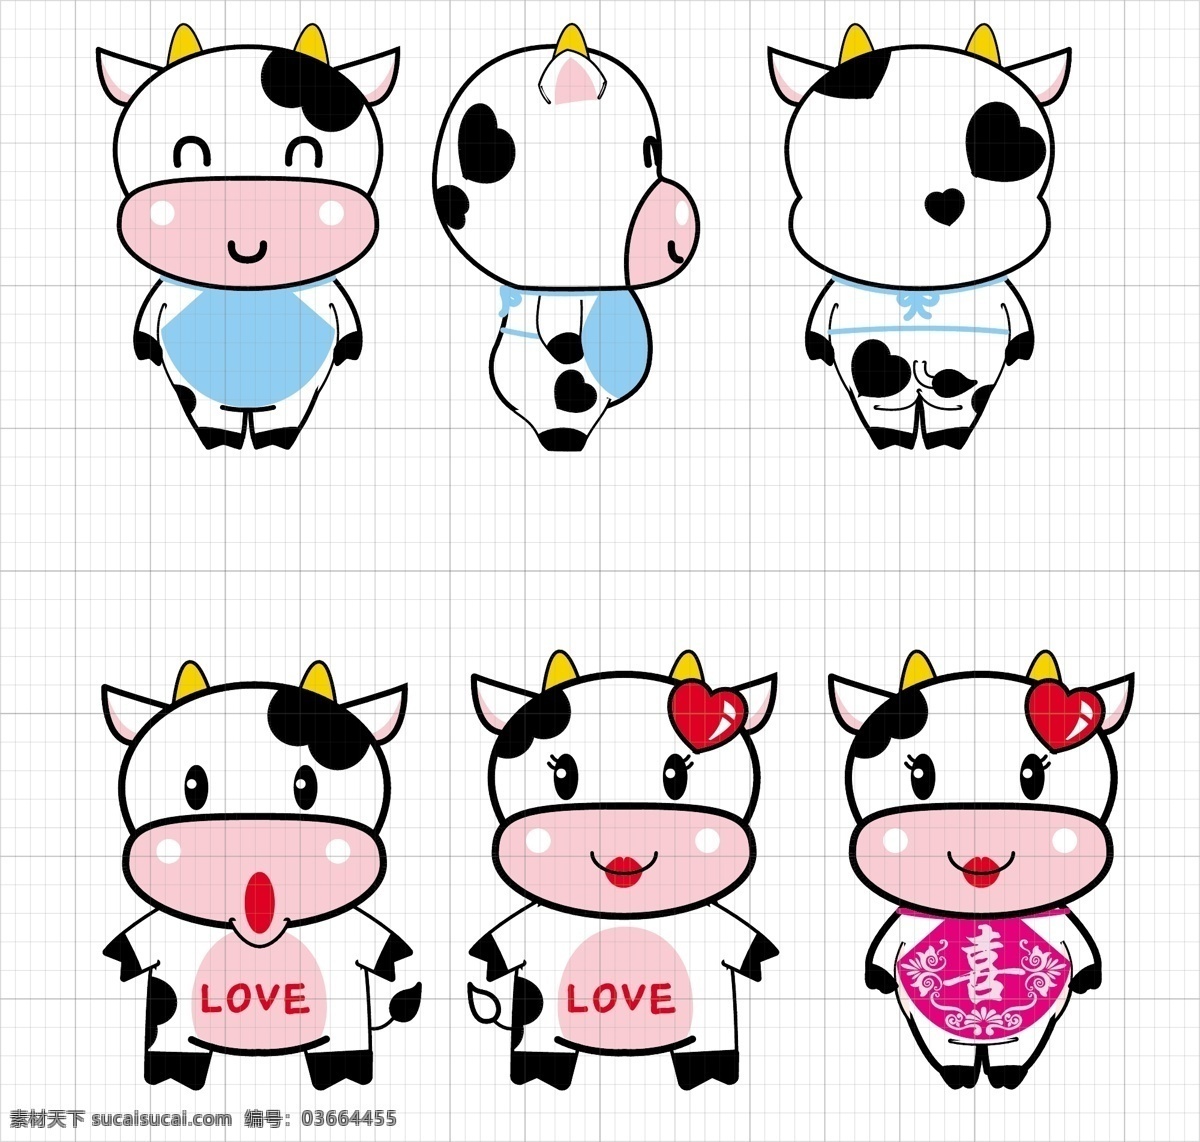 卡通牛牛 可爱奶牛 卡通奶牛 公仔牛 萌萌奶牛 奶牛家族 小妞宝宝 卡通 卡通设计